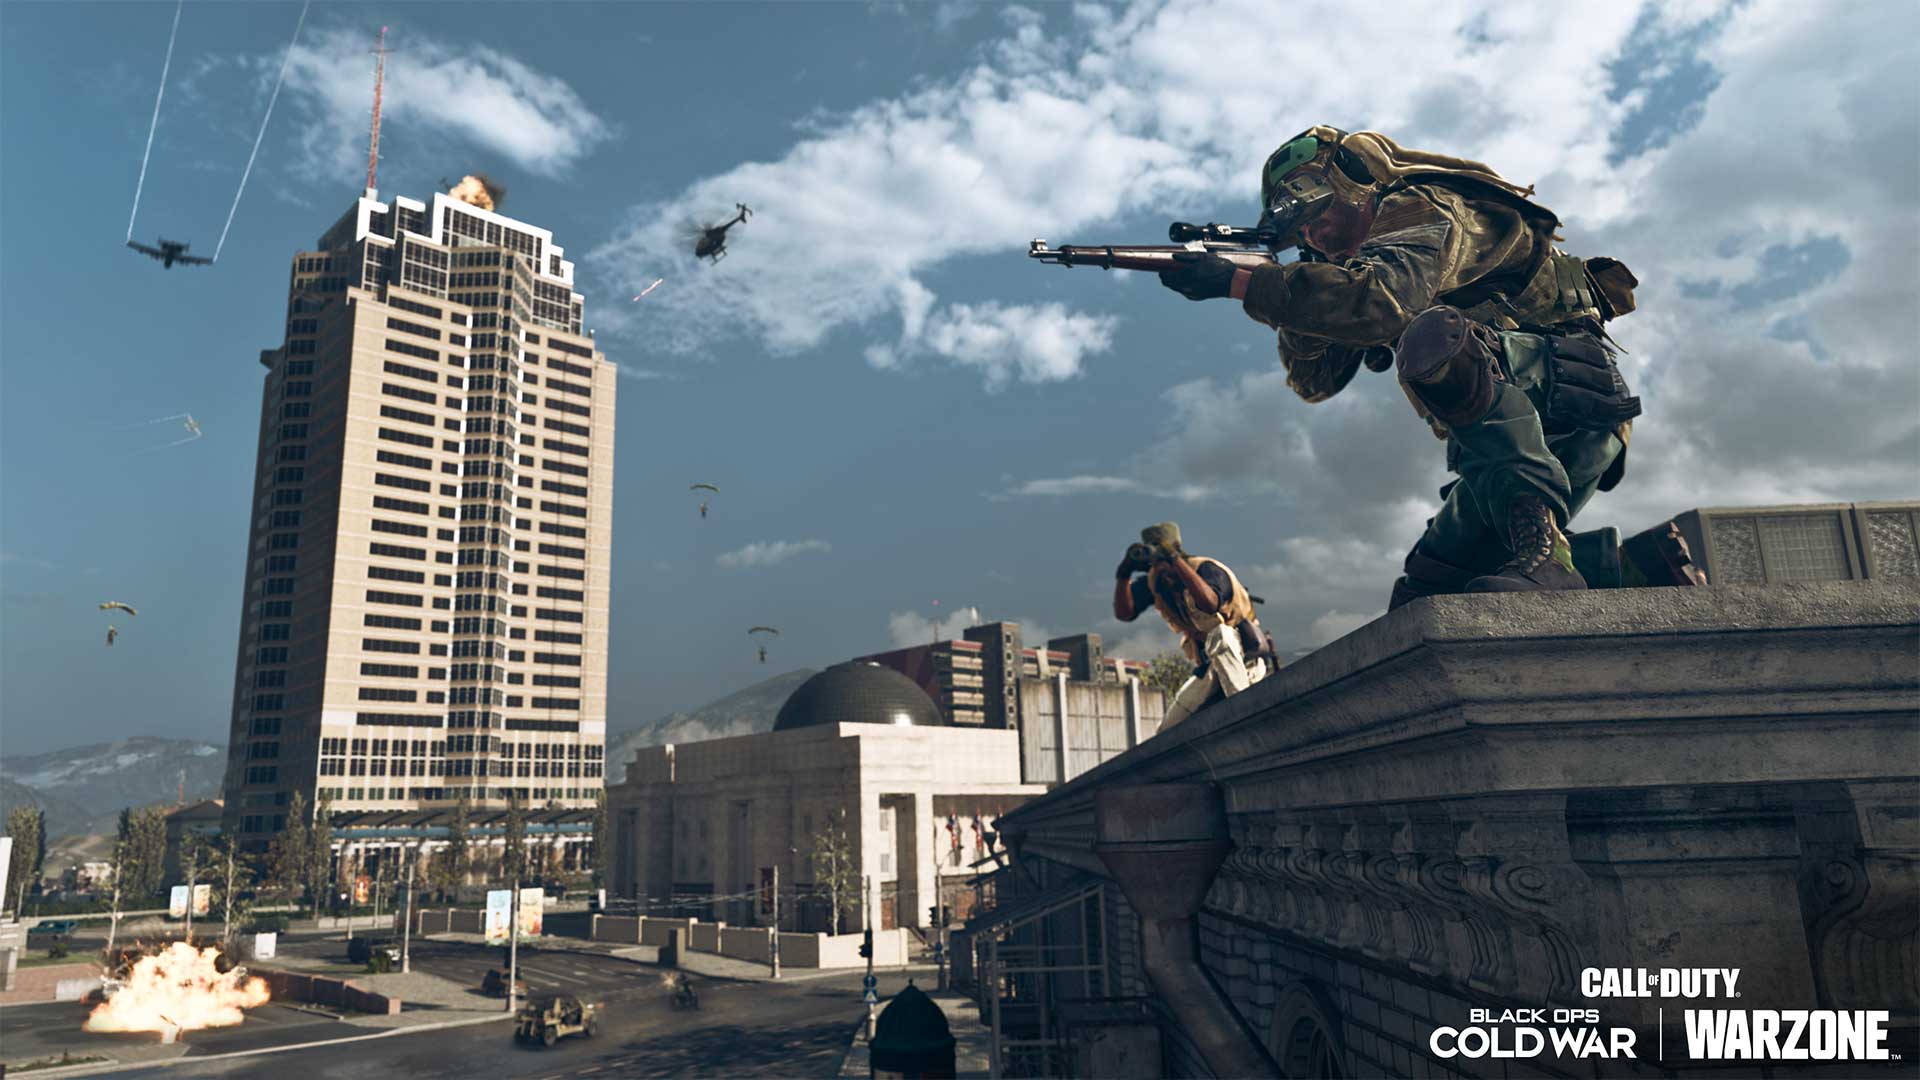 Call of Duty Update - Nakatomi Plaza